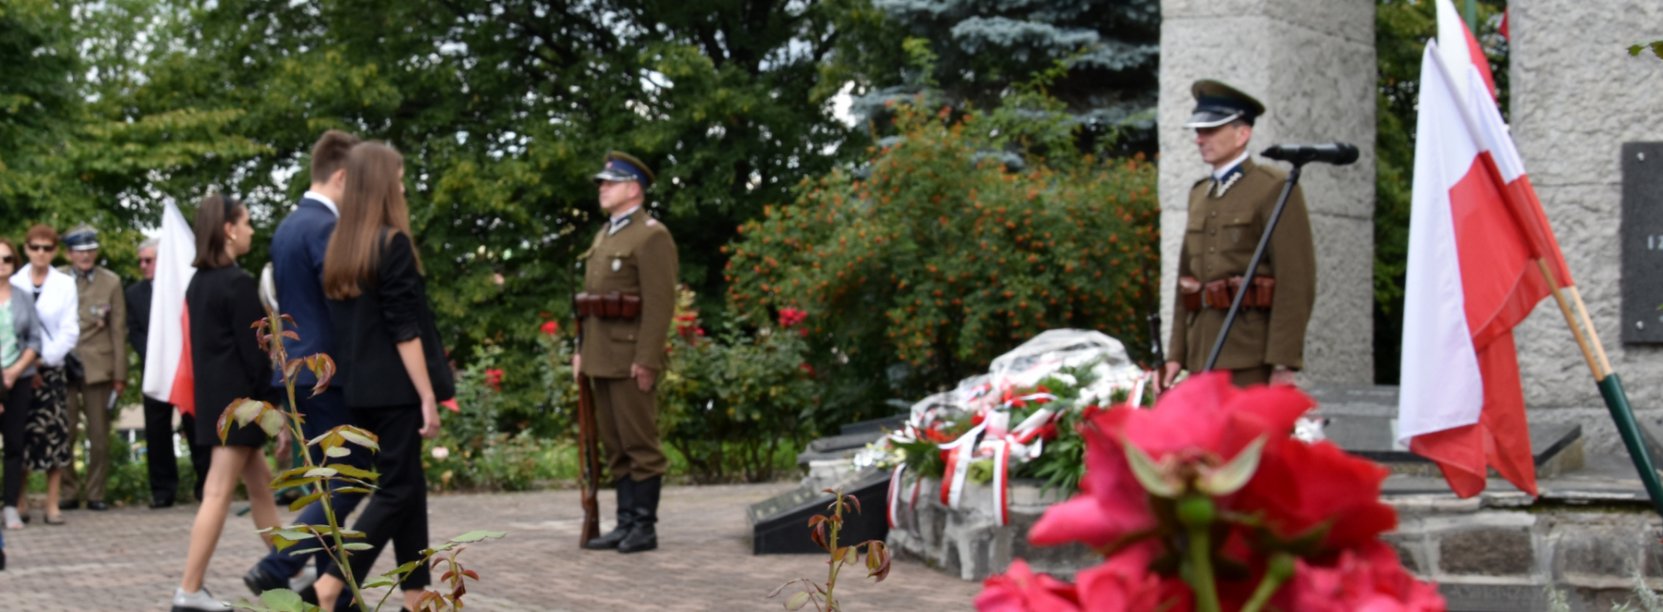 Dwóch żołnieży pełni wartę przy pomniku, do któego podchodzi grupa młodzieży z kwiatami, obok flaga Polski